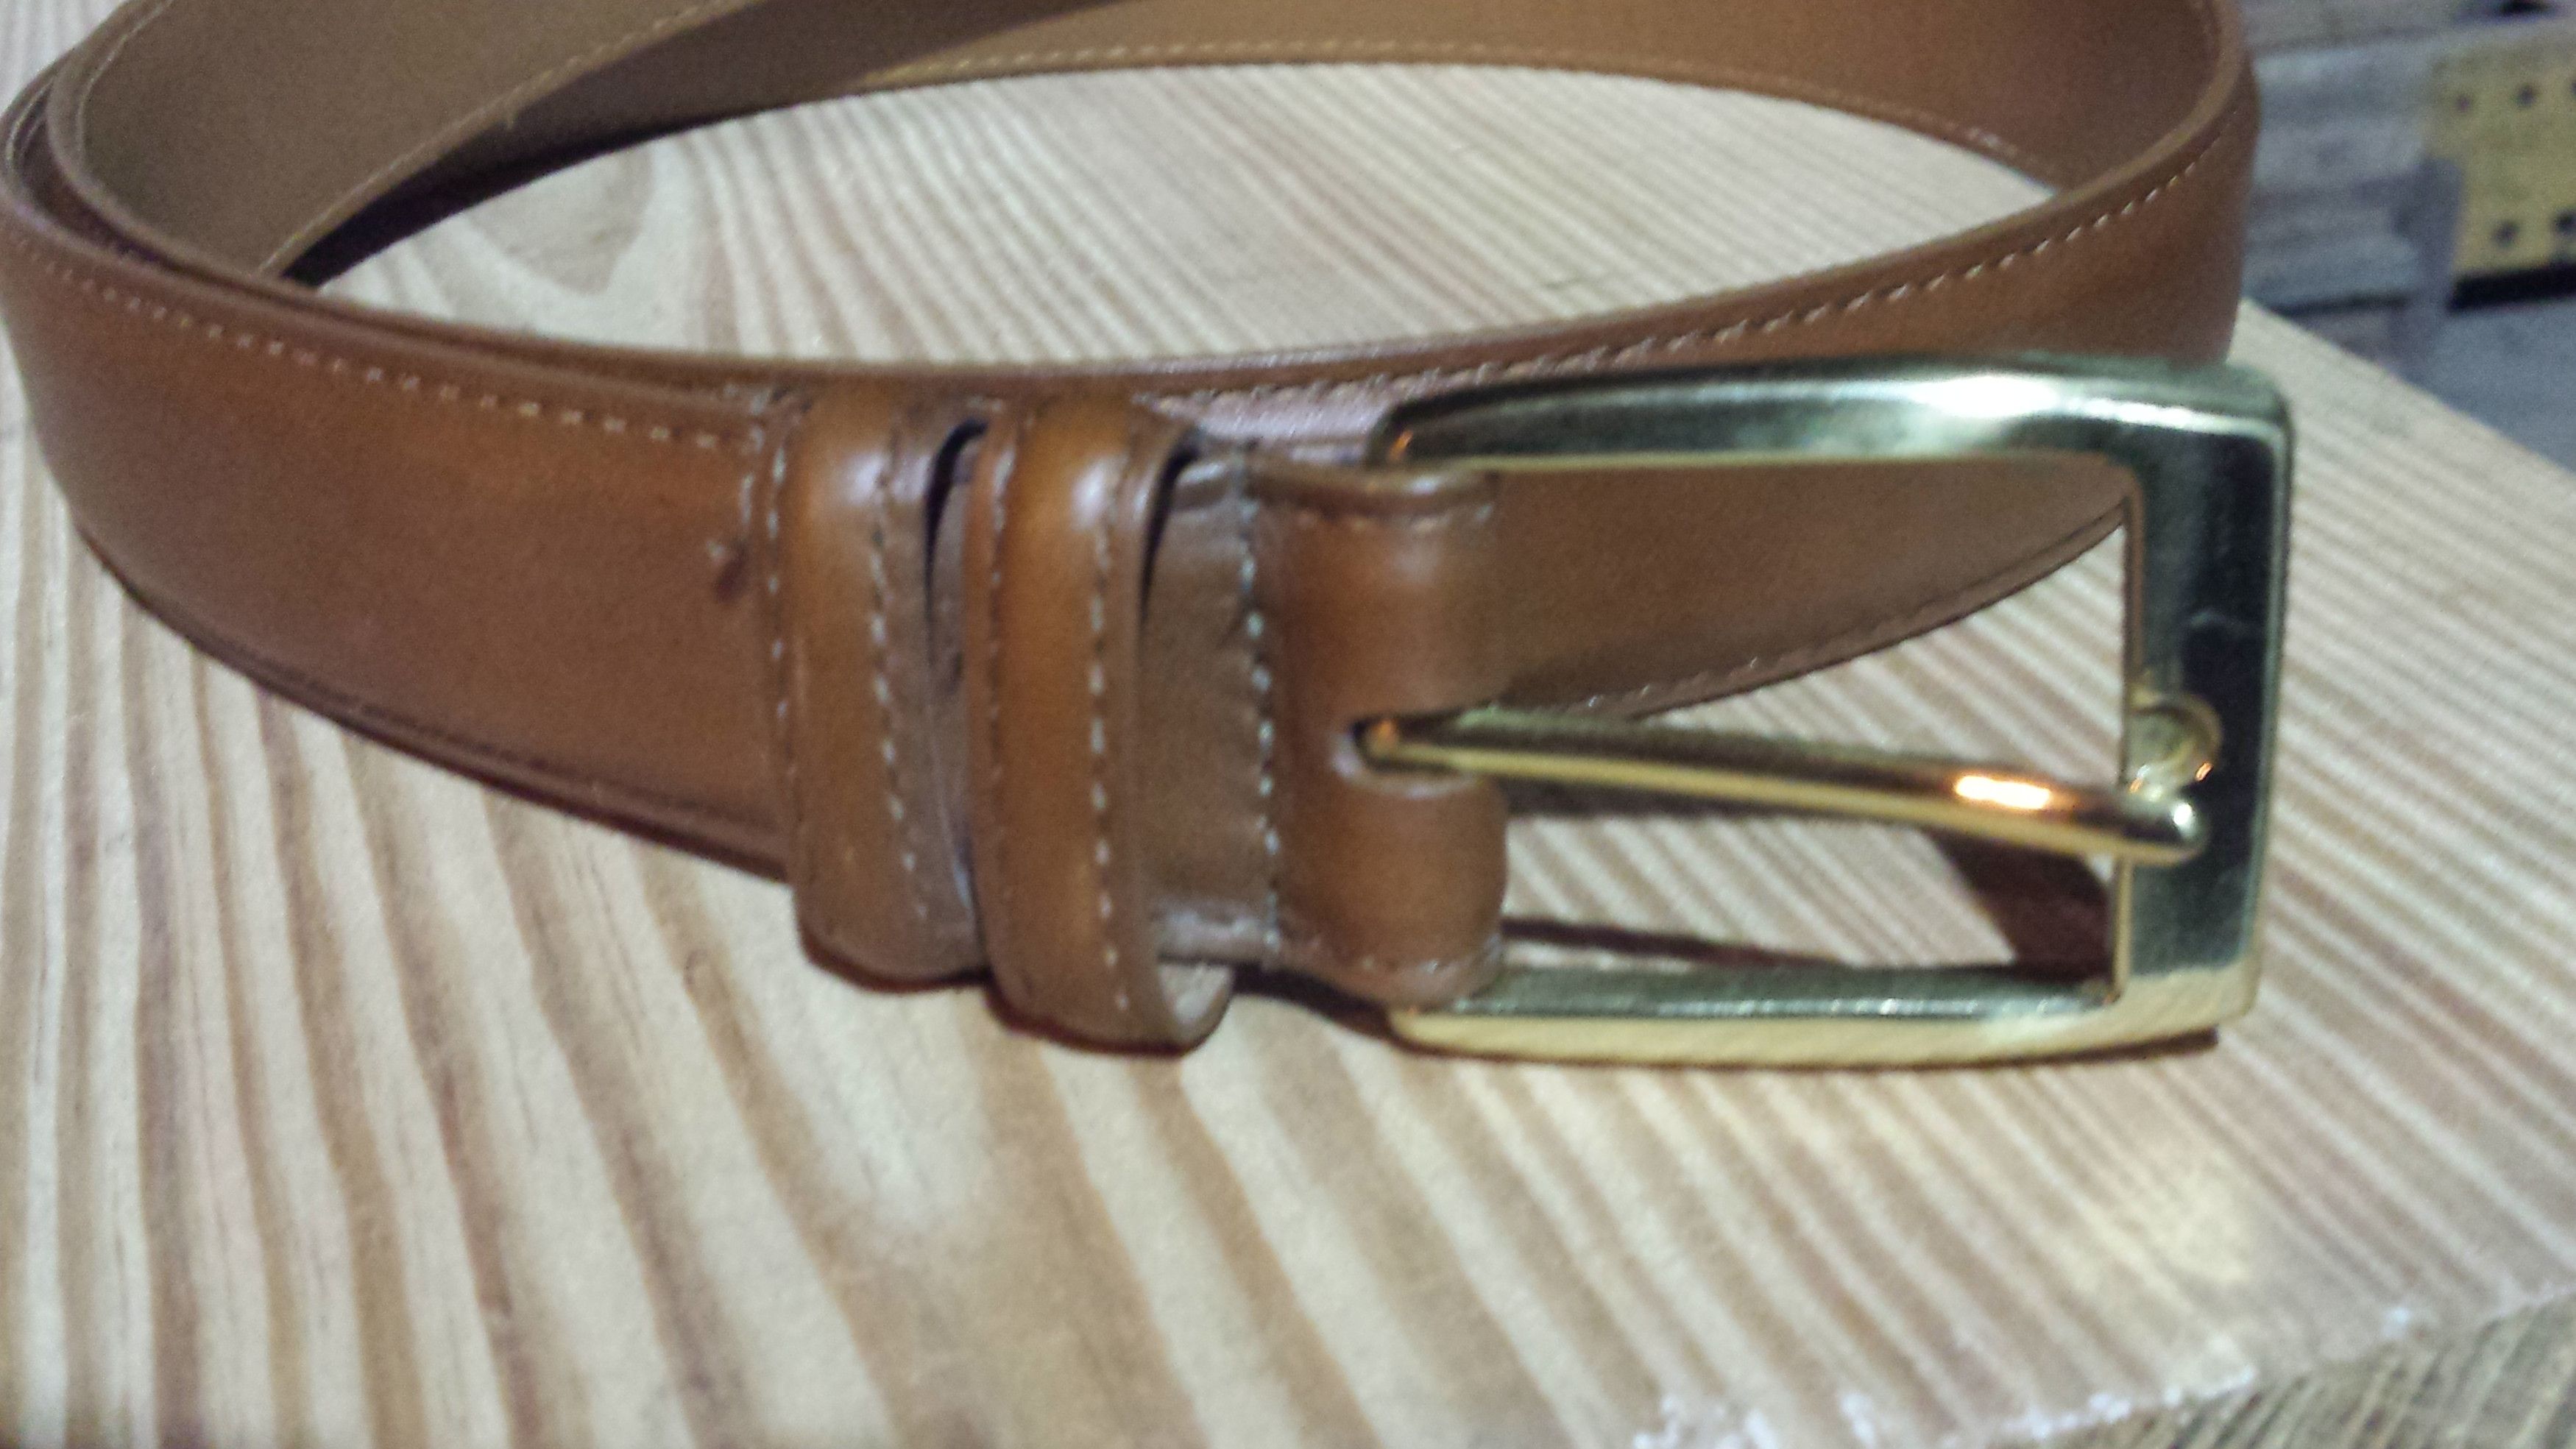 Allen Edmonds Calfskin Leather Belt | Grailed